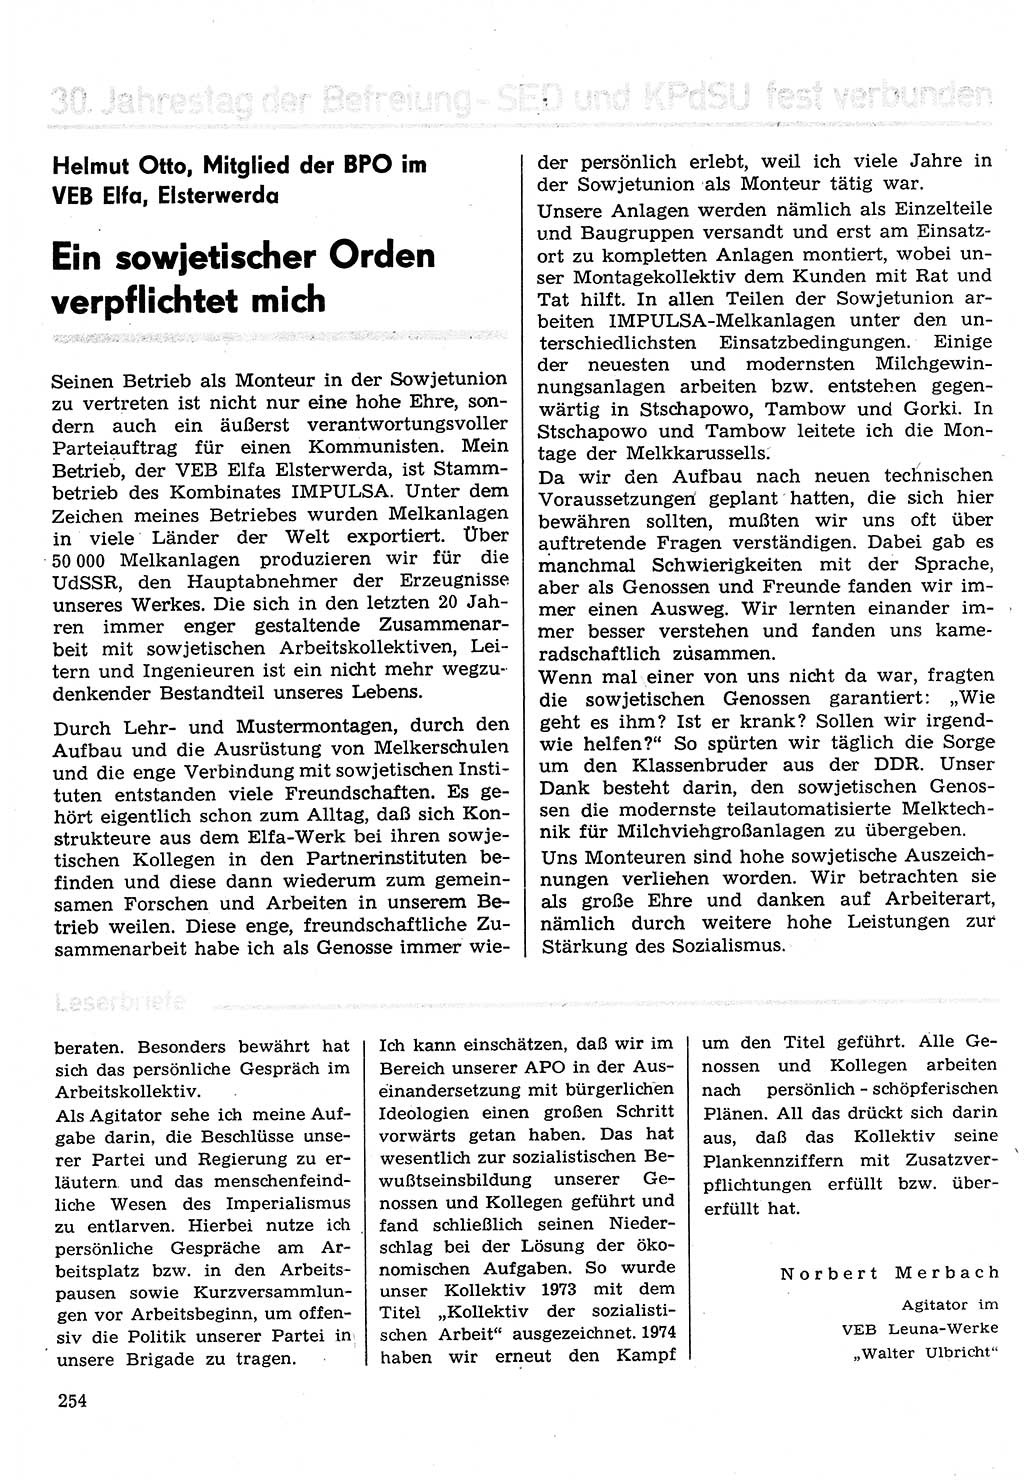 Neuer Weg (NW), Organ des Zentralkomitees (ZK) der SED (Sozialistische Einheitspartei Deutschlands) für Fragen des Parteilebens, 30. Jahrgang [Deutsche Demokratische Republik (DDR)] 1975, Seite 254 (NW ZK SED DDR 1975, S. 254)